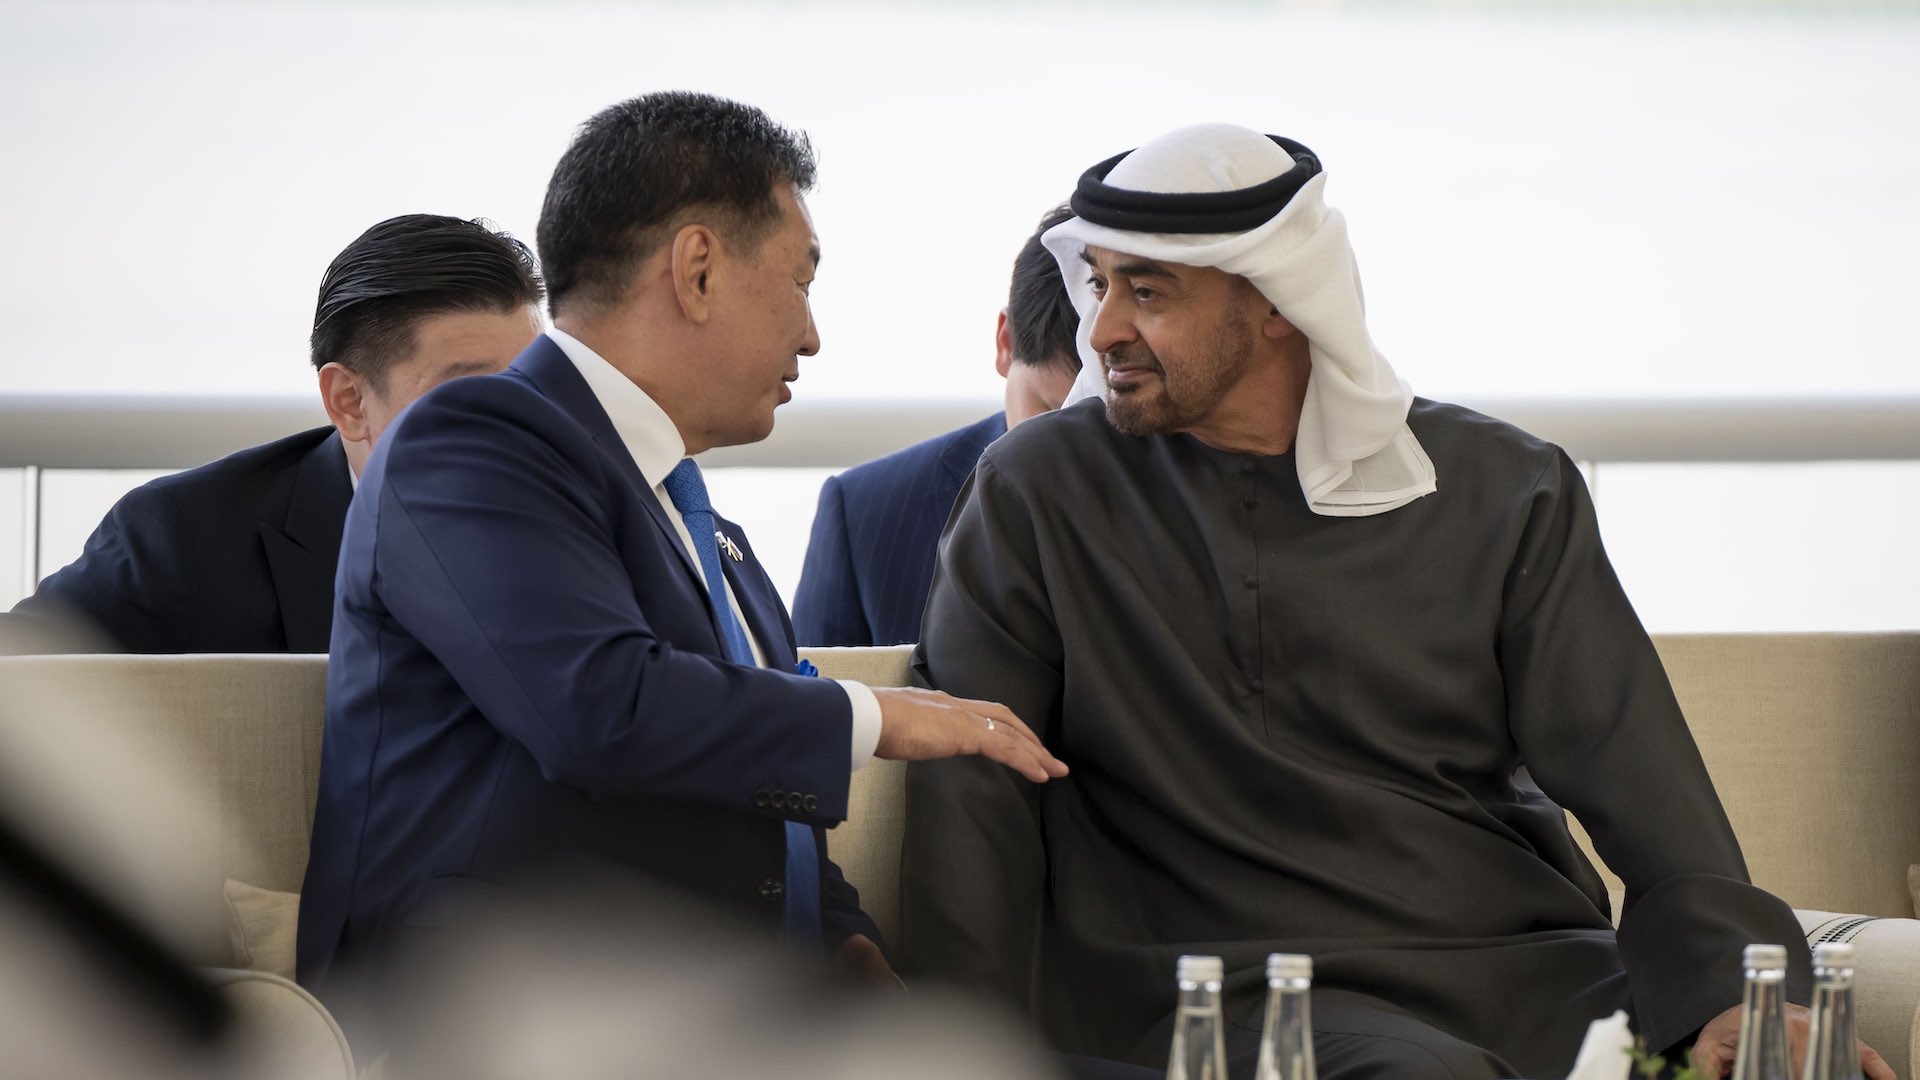 यूएई और मंगोलिया ने अबू धाबी में रणनीतिक समझौतों के साथ संबंधों को मजबूत किया